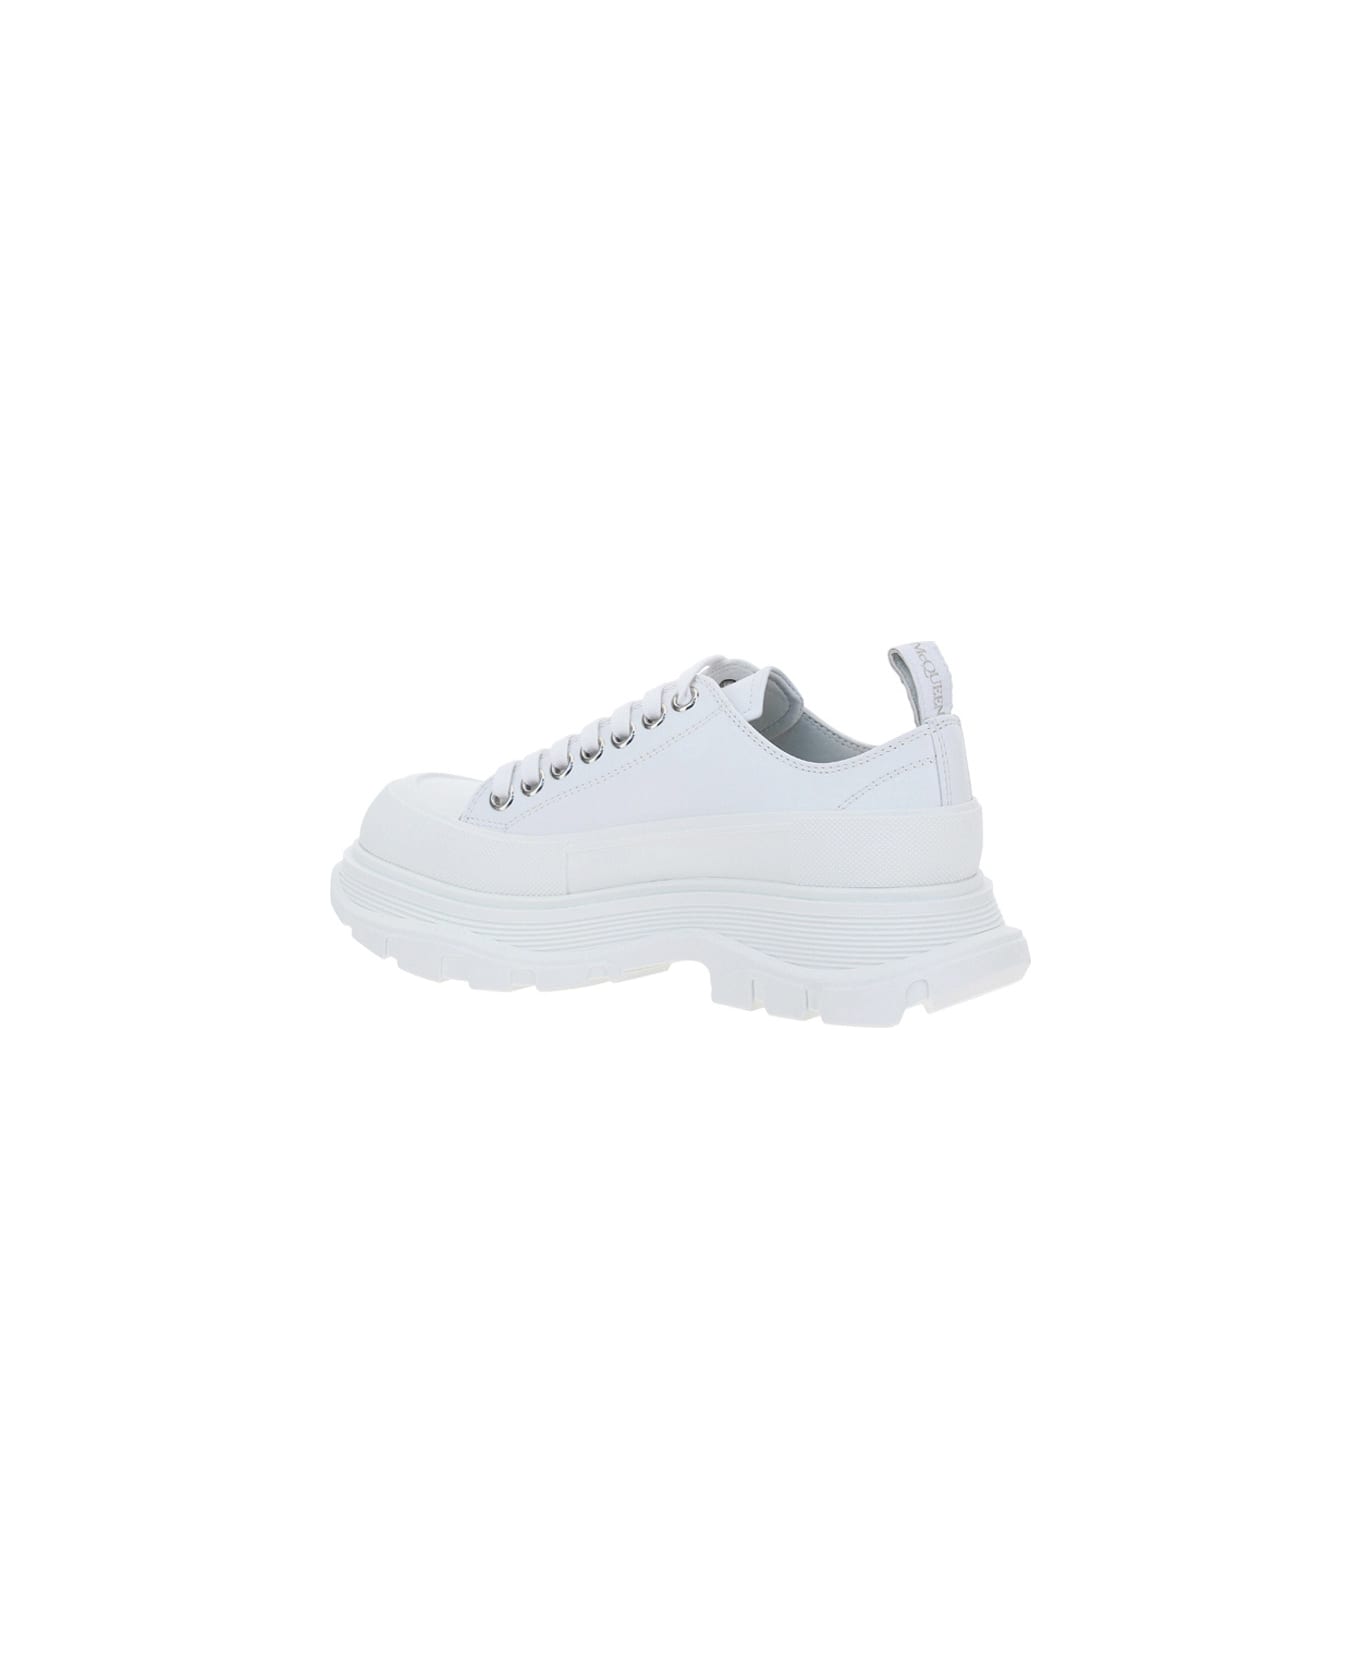 Alexander McQueen Sneakers - Opt. White/black